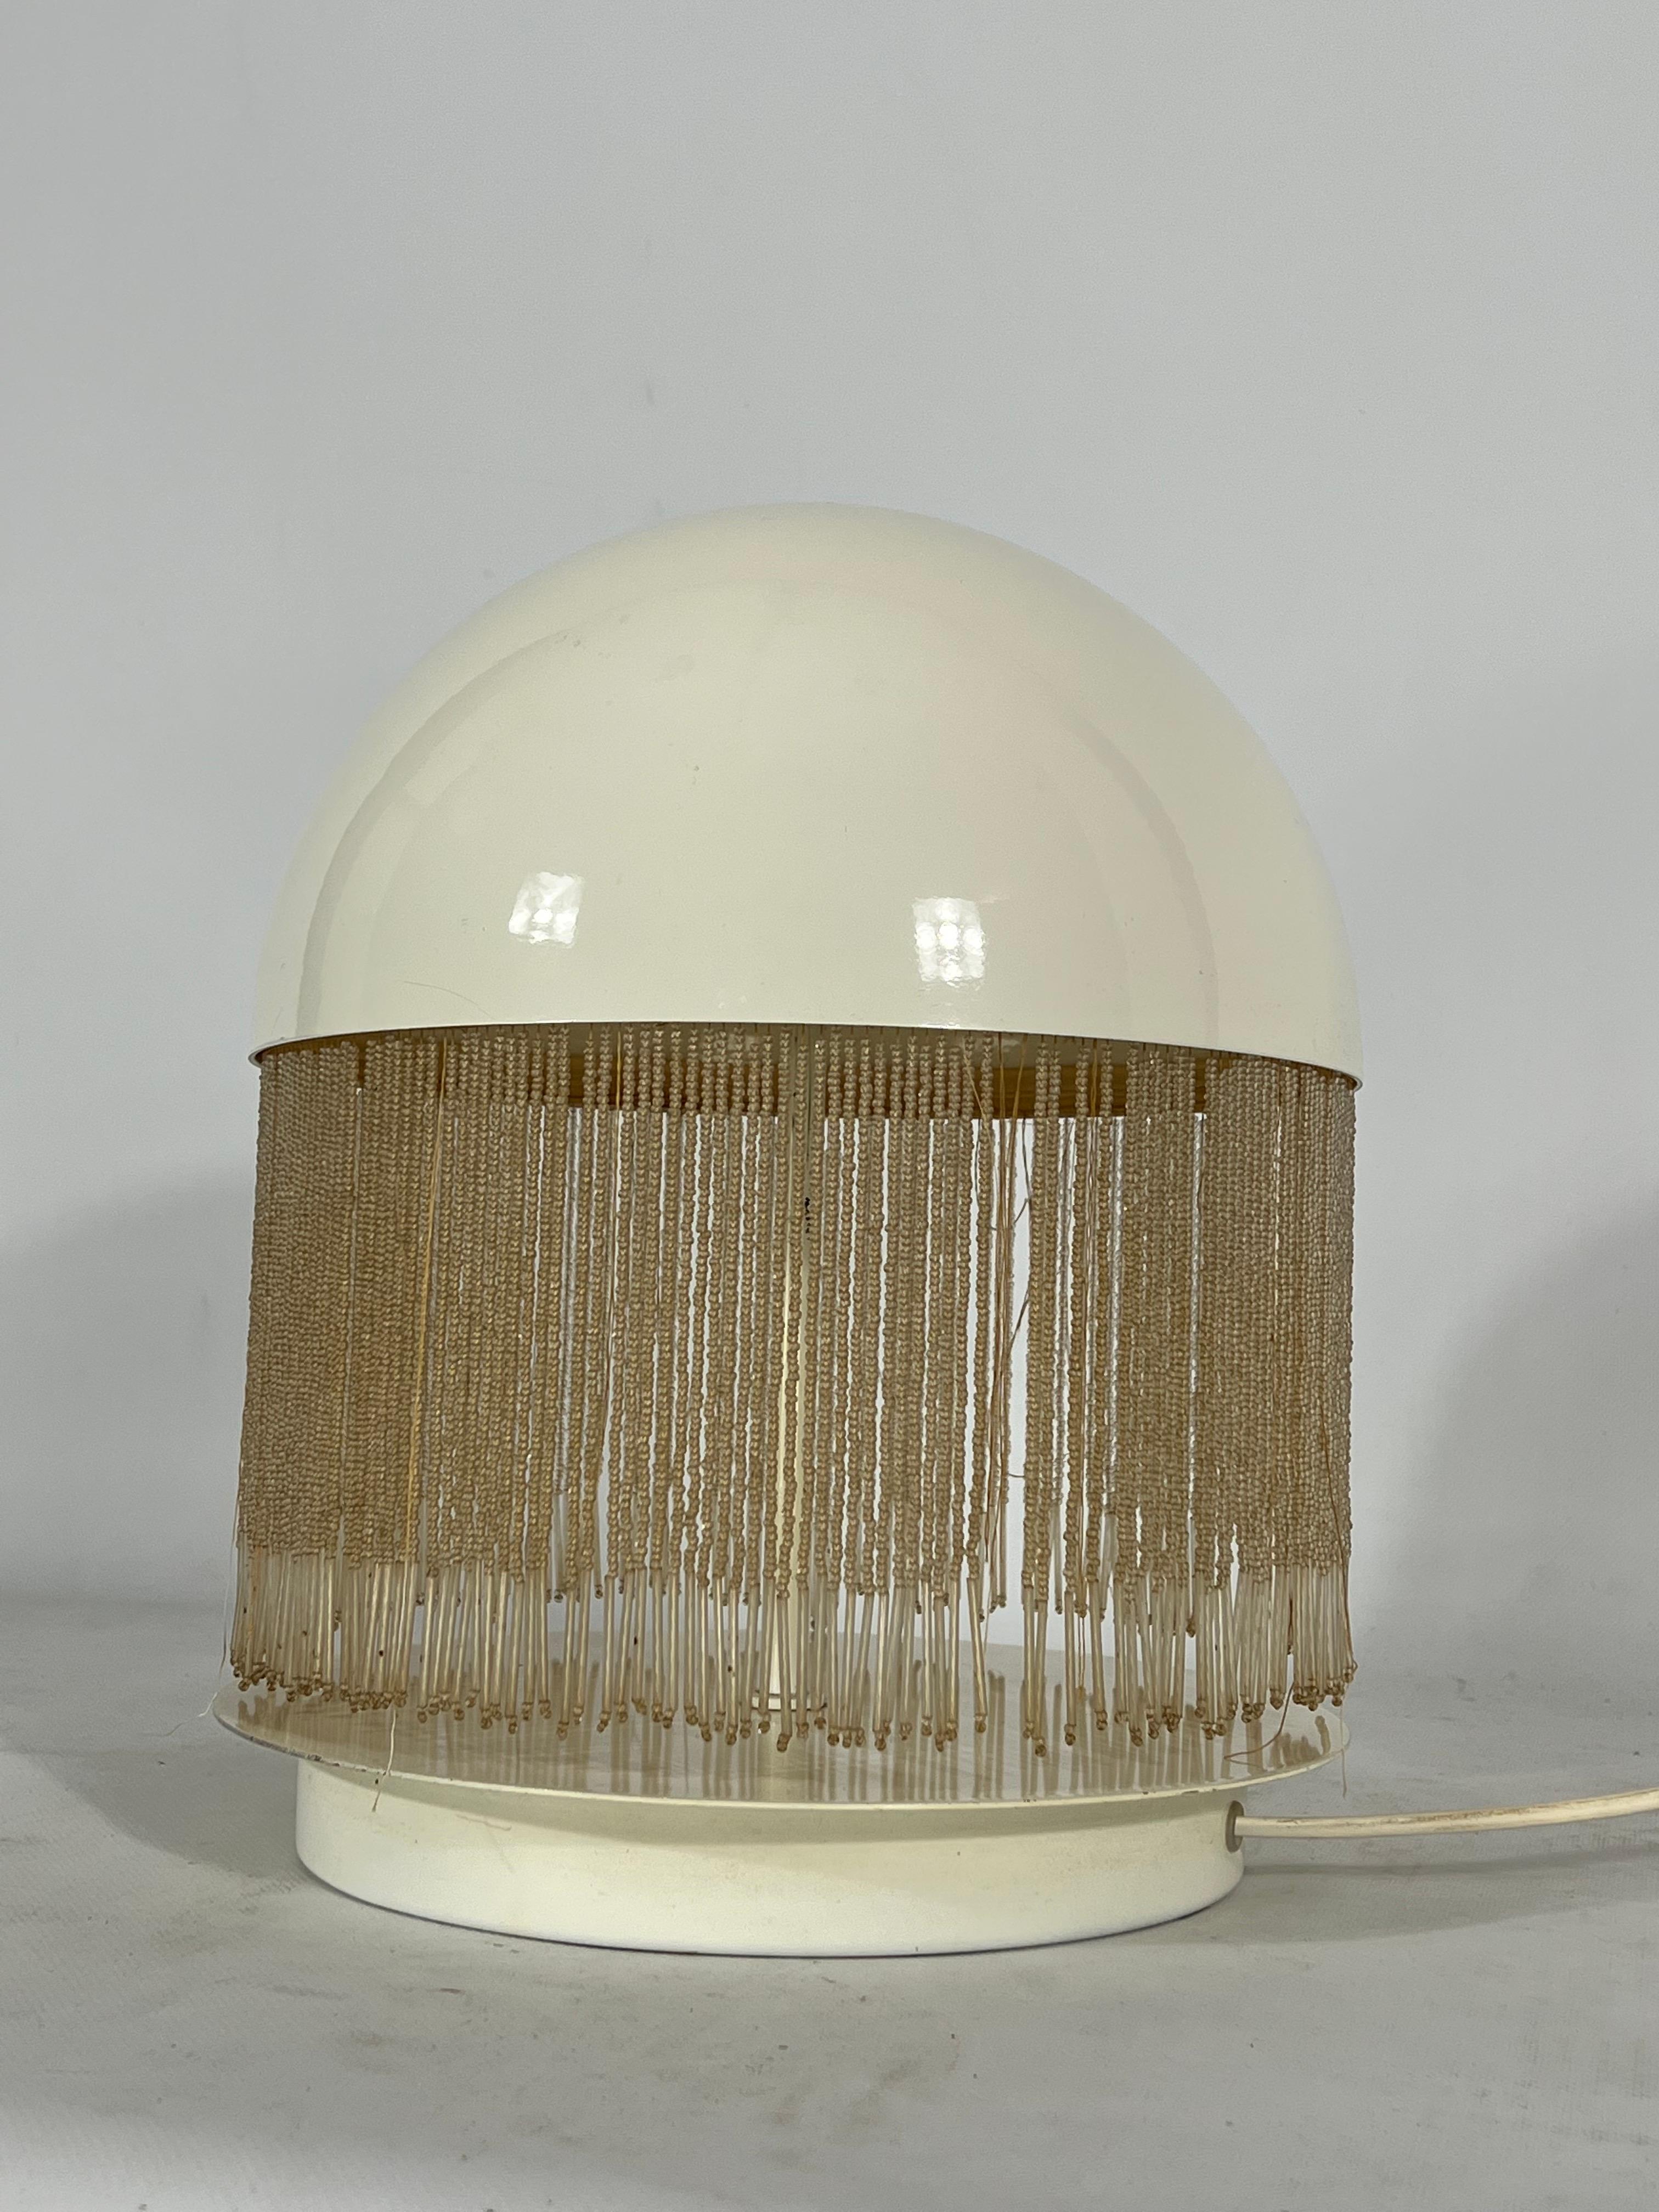 Rare Italian Modern Otero Table Lamp by Giuliana Gramigna for Quattrifolio, 1979 In Good Condition For Sale In Catania, CT